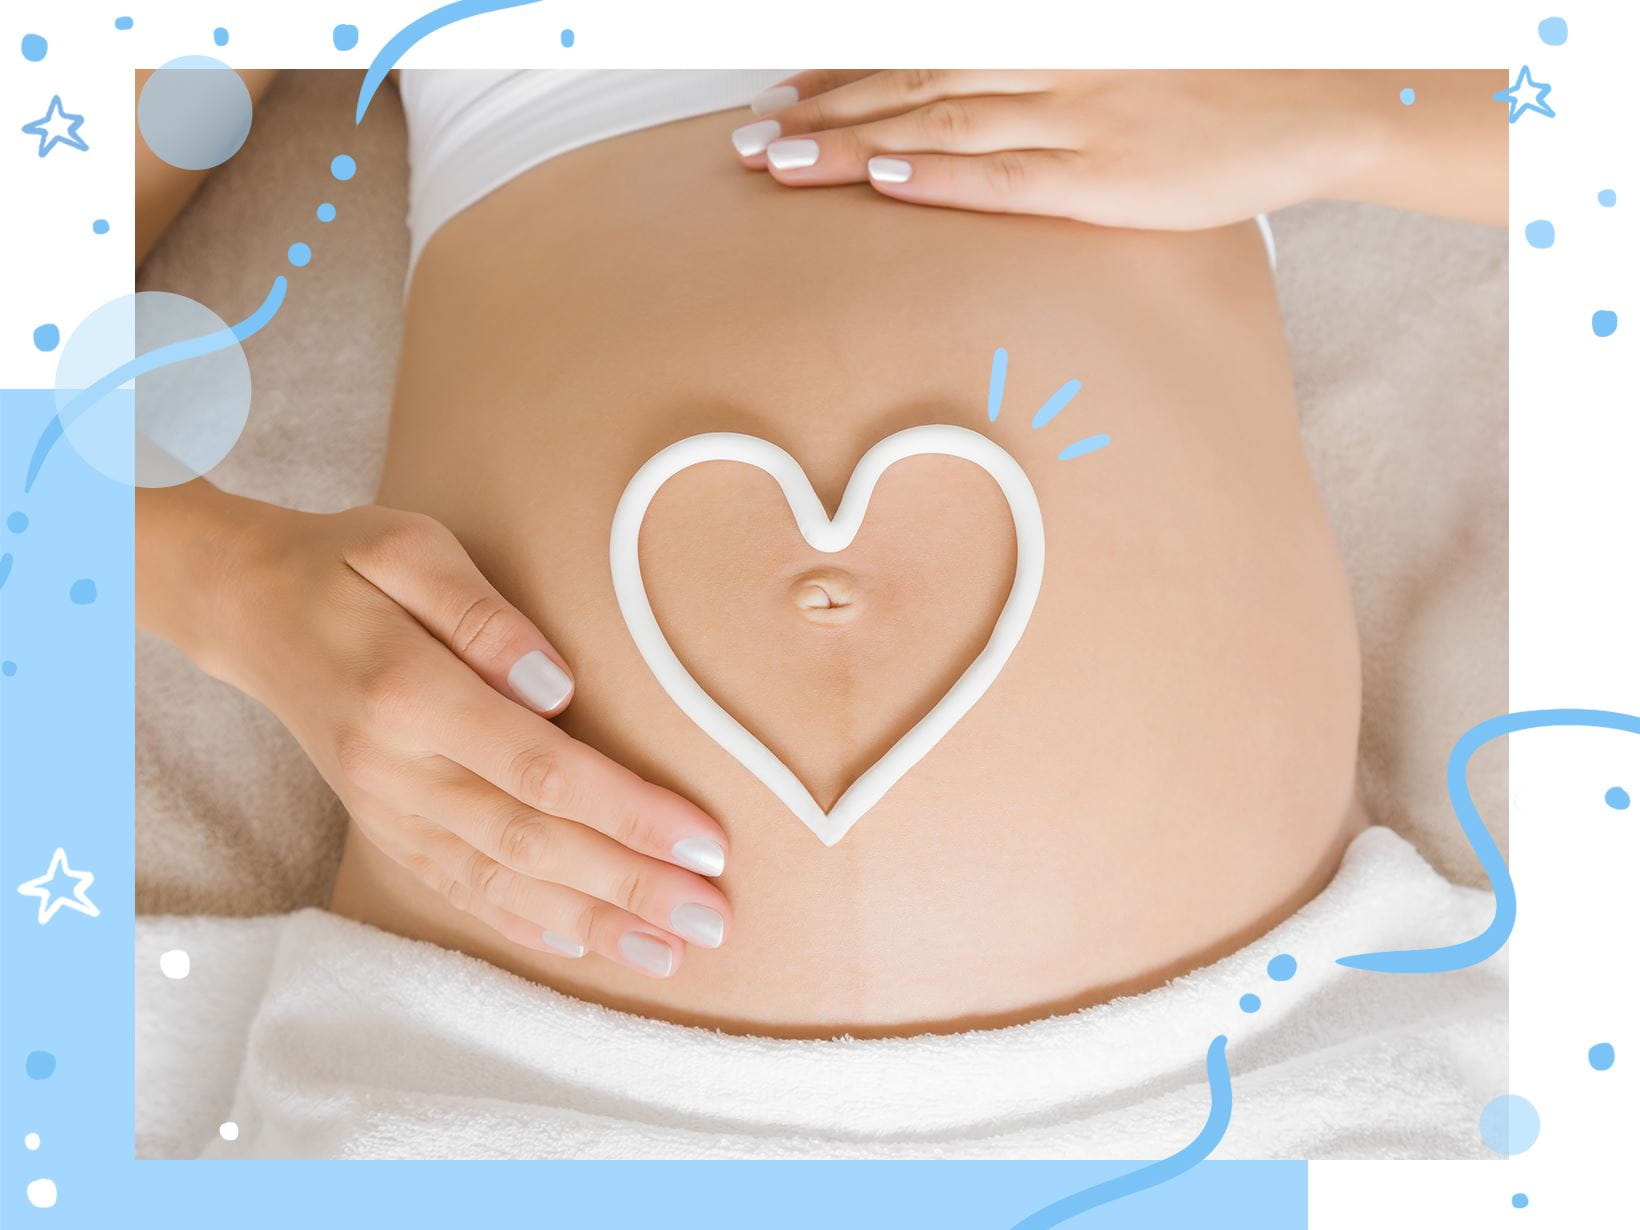    Jakie zmiany dotykają skórę w ciąży? 